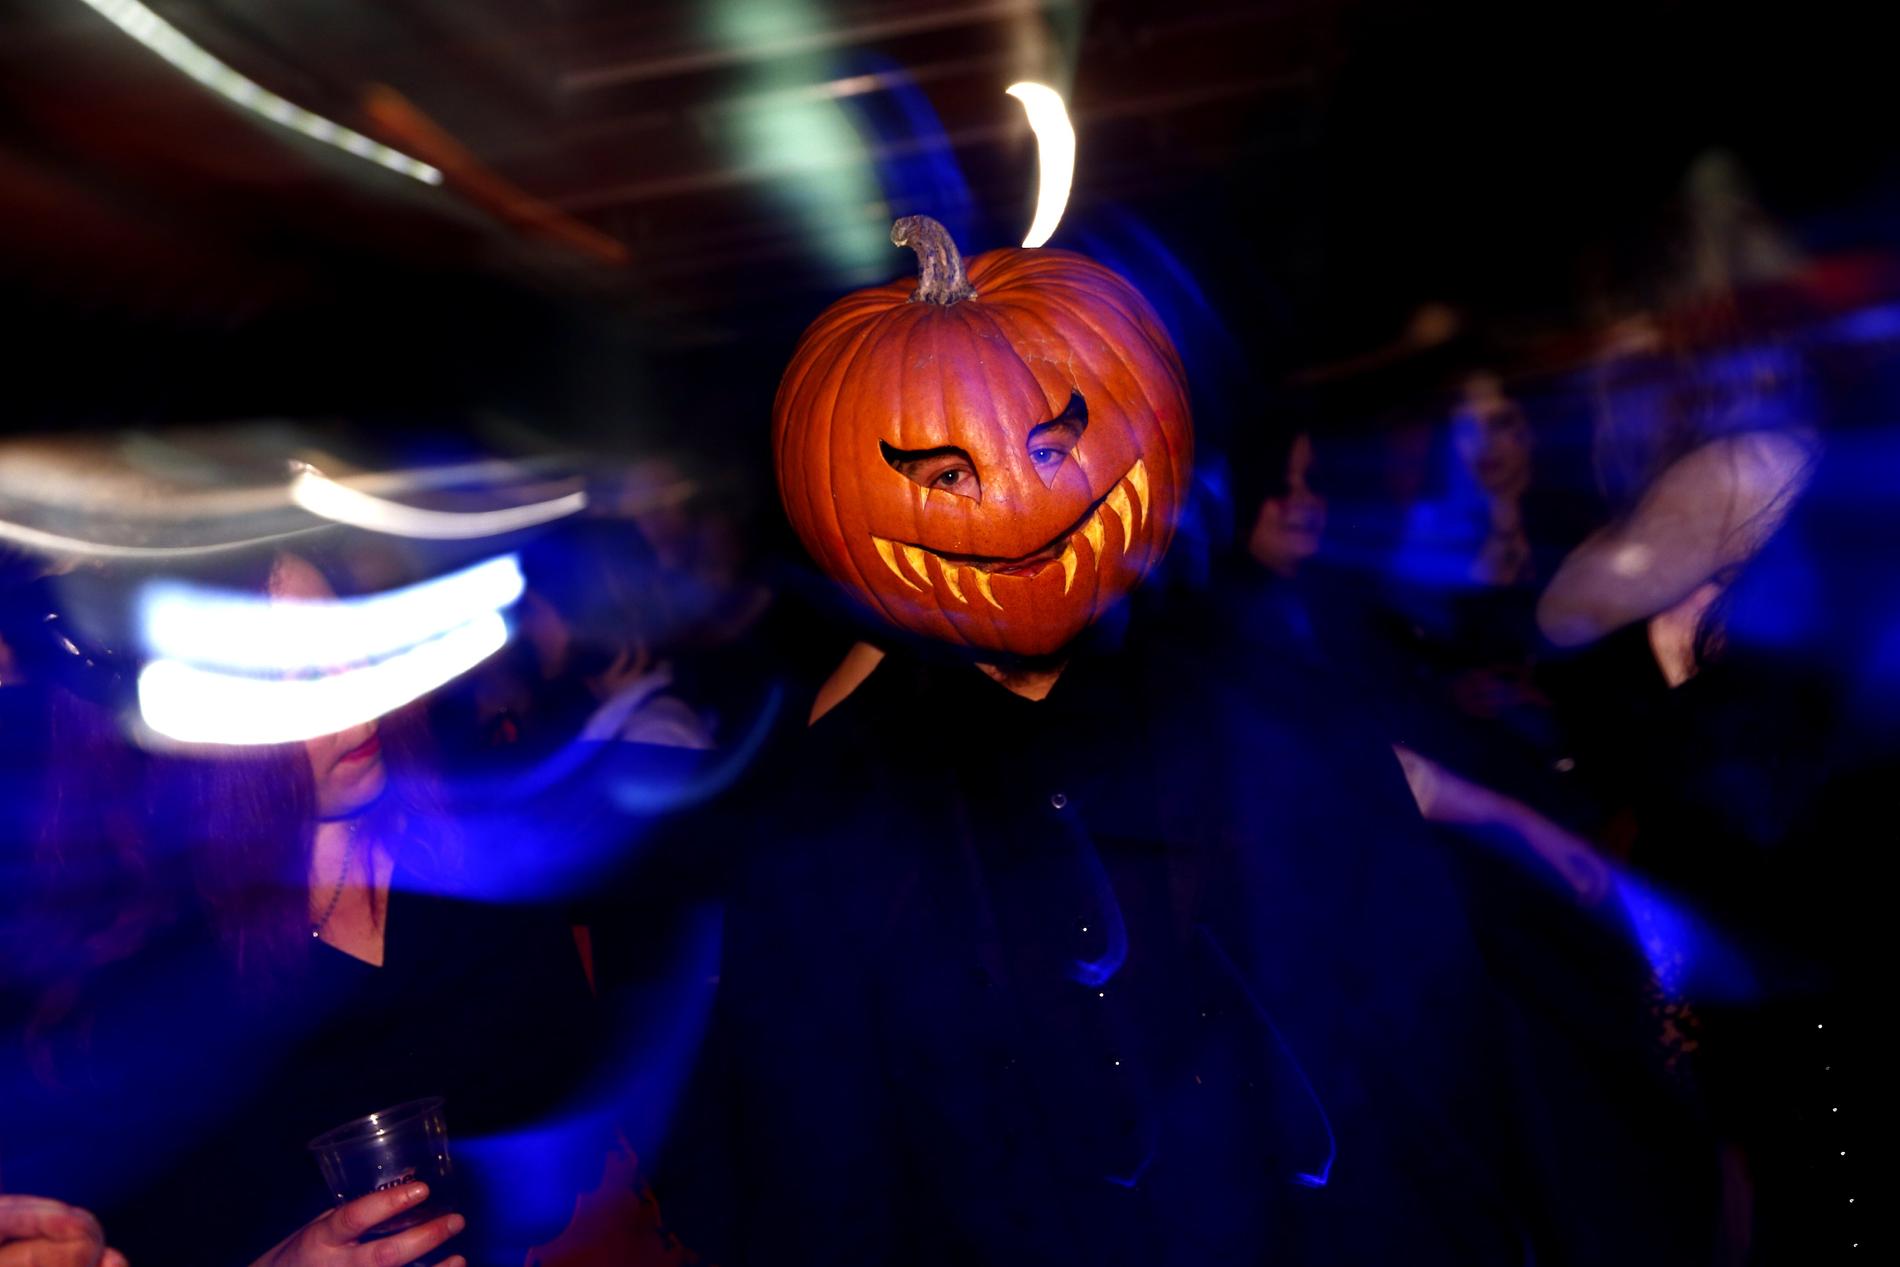 Halloweenfesten som Chalmers planerar möter kritik. Pumpan på bilden har inget med den festen att göra. Arkivbild.